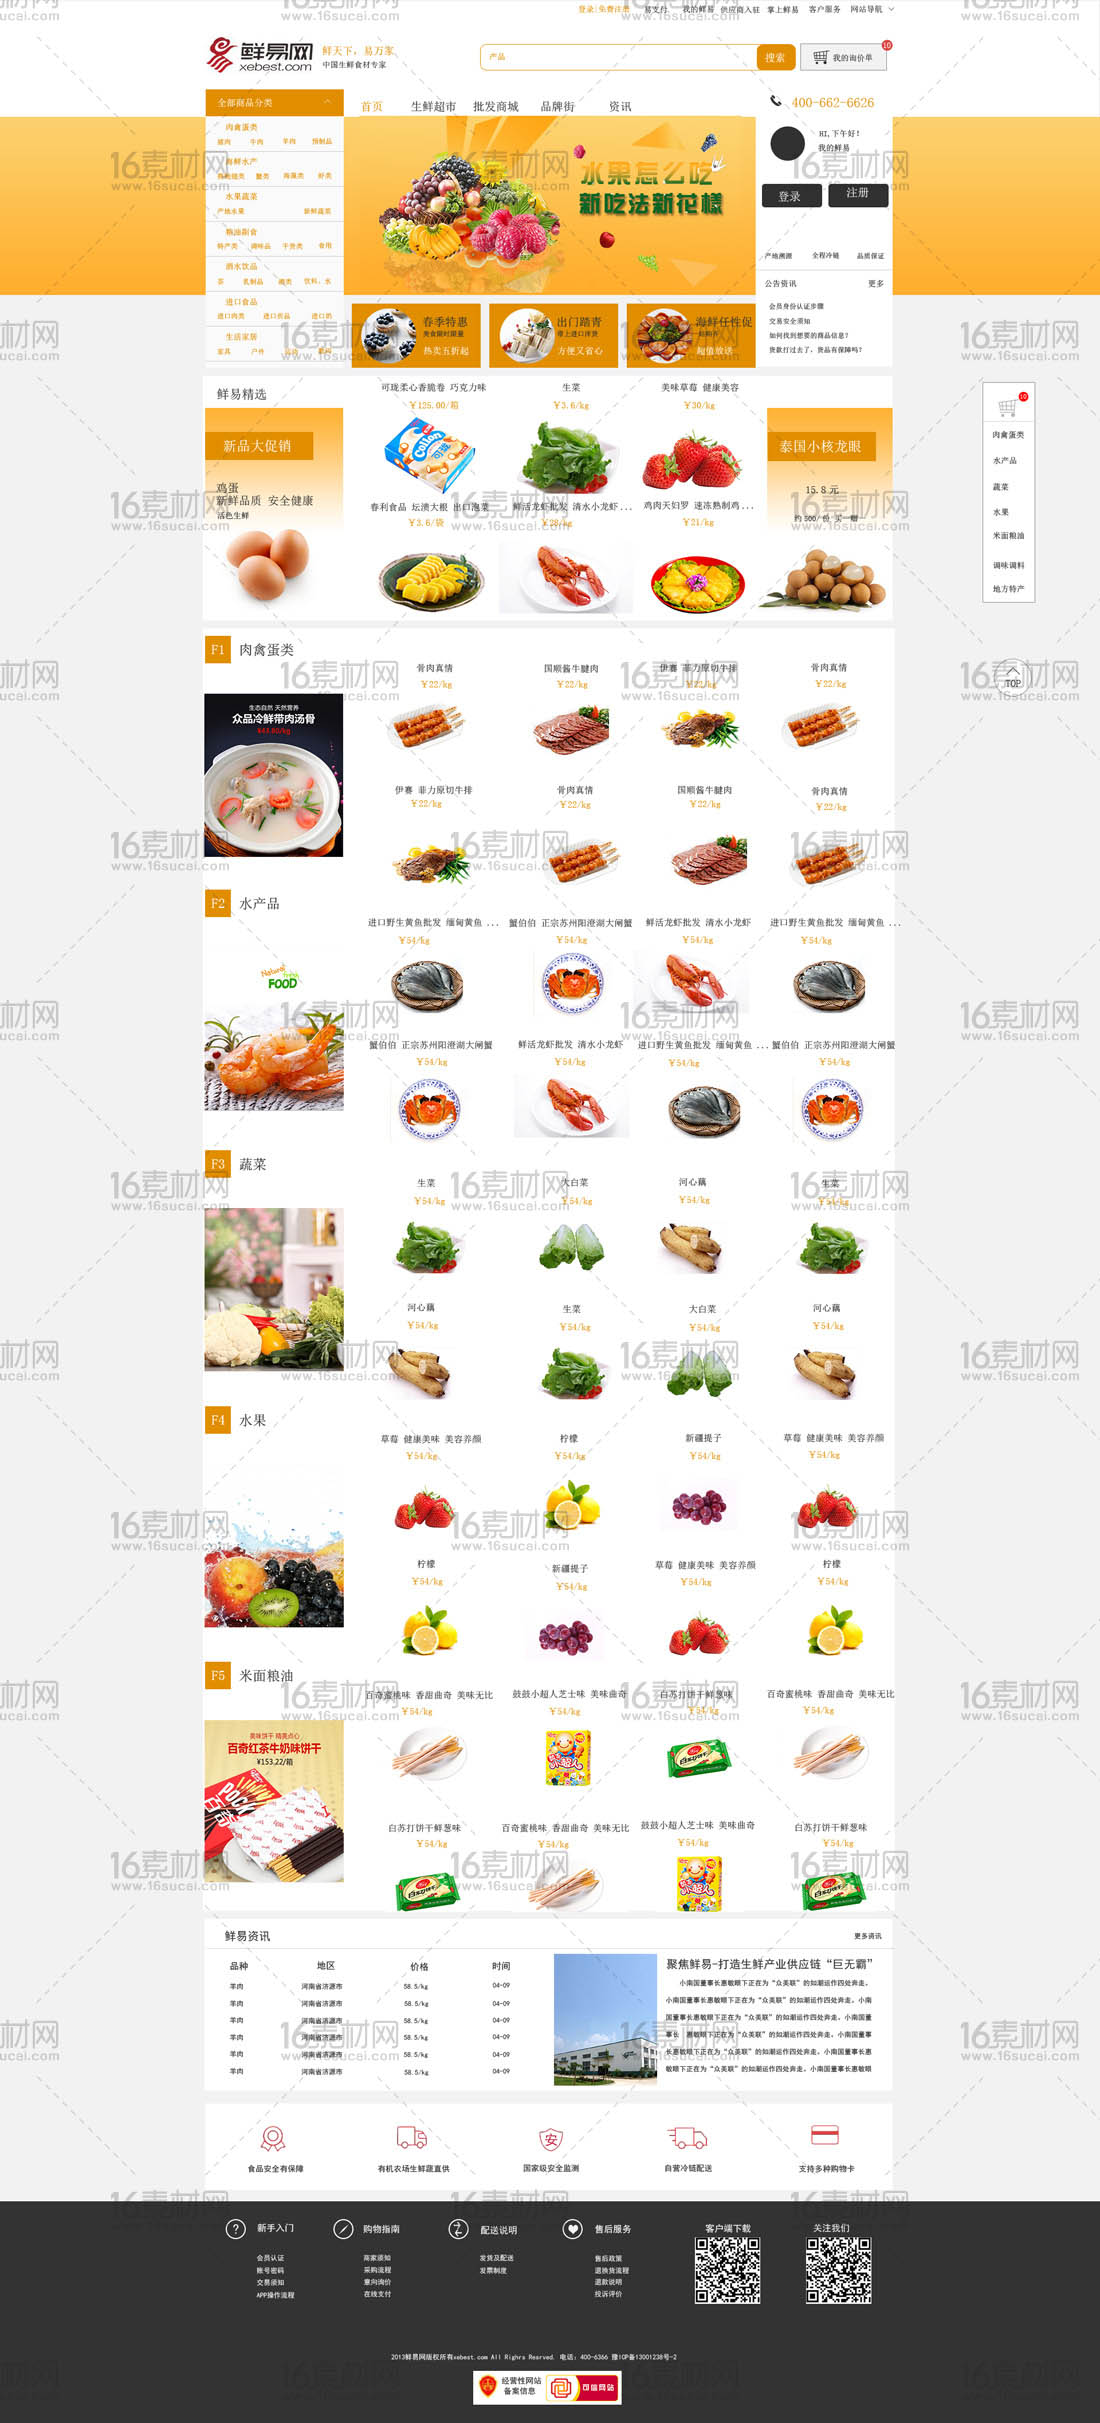 现代简约水果蔬菜交易网站模板psd分层素材